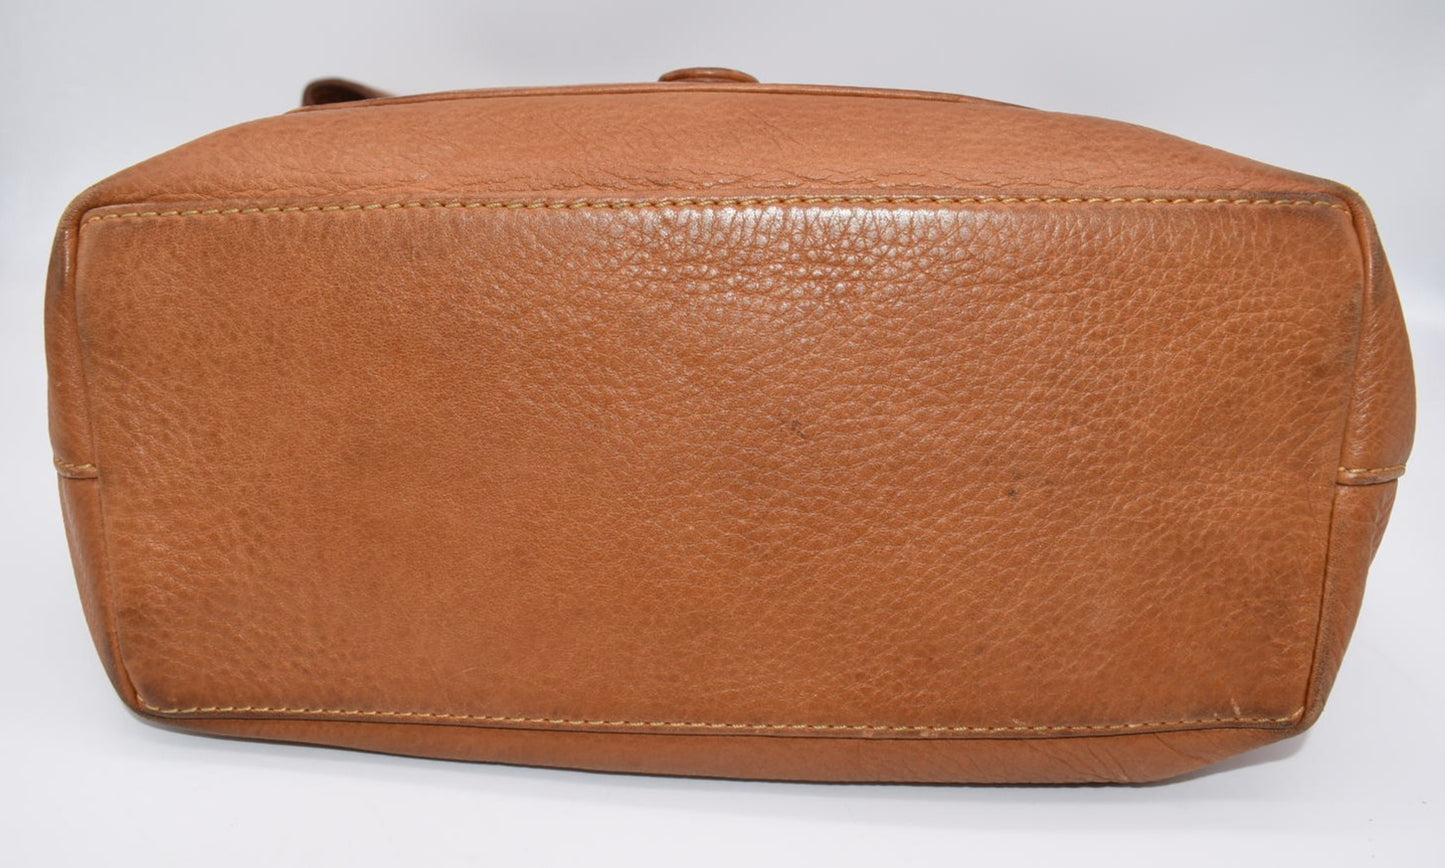 Vintage Dooney & Bourke Pebbled Leather Flap Shoulder Handbag - Sale